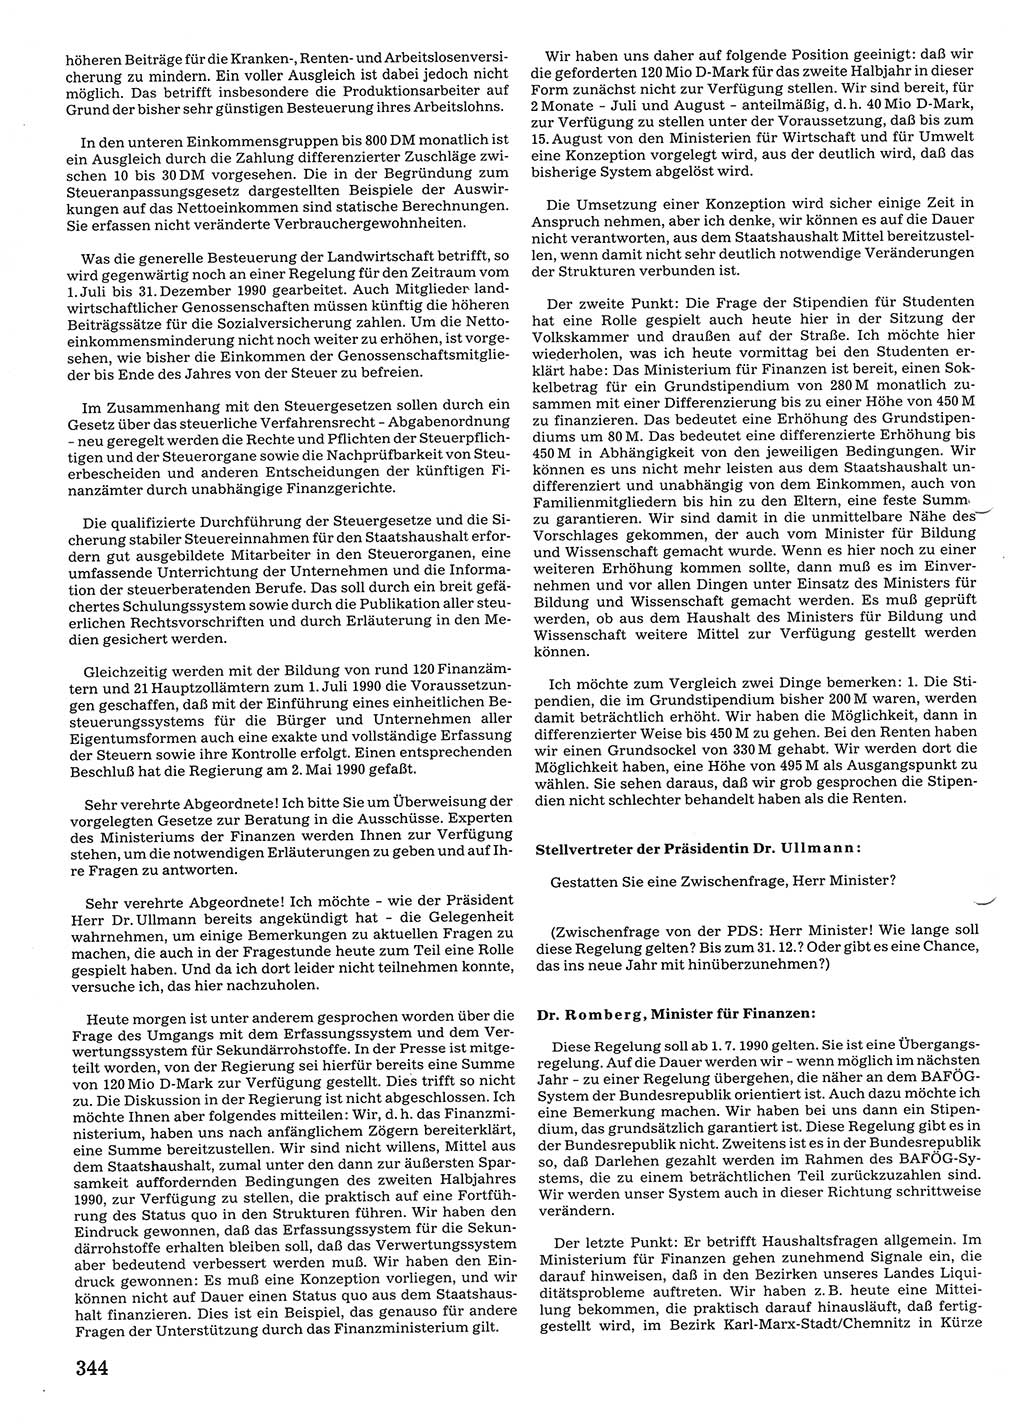 Tagungen der Volkskammer (VK) der Deutschen Demokratischen Republik (DDR), 10. Wahlperiode 1990, Seite 344 (VK. DDR 10. WP. 1990, Prot. Tg. 1-38, 5.4.-2.10.1990, S. 344)